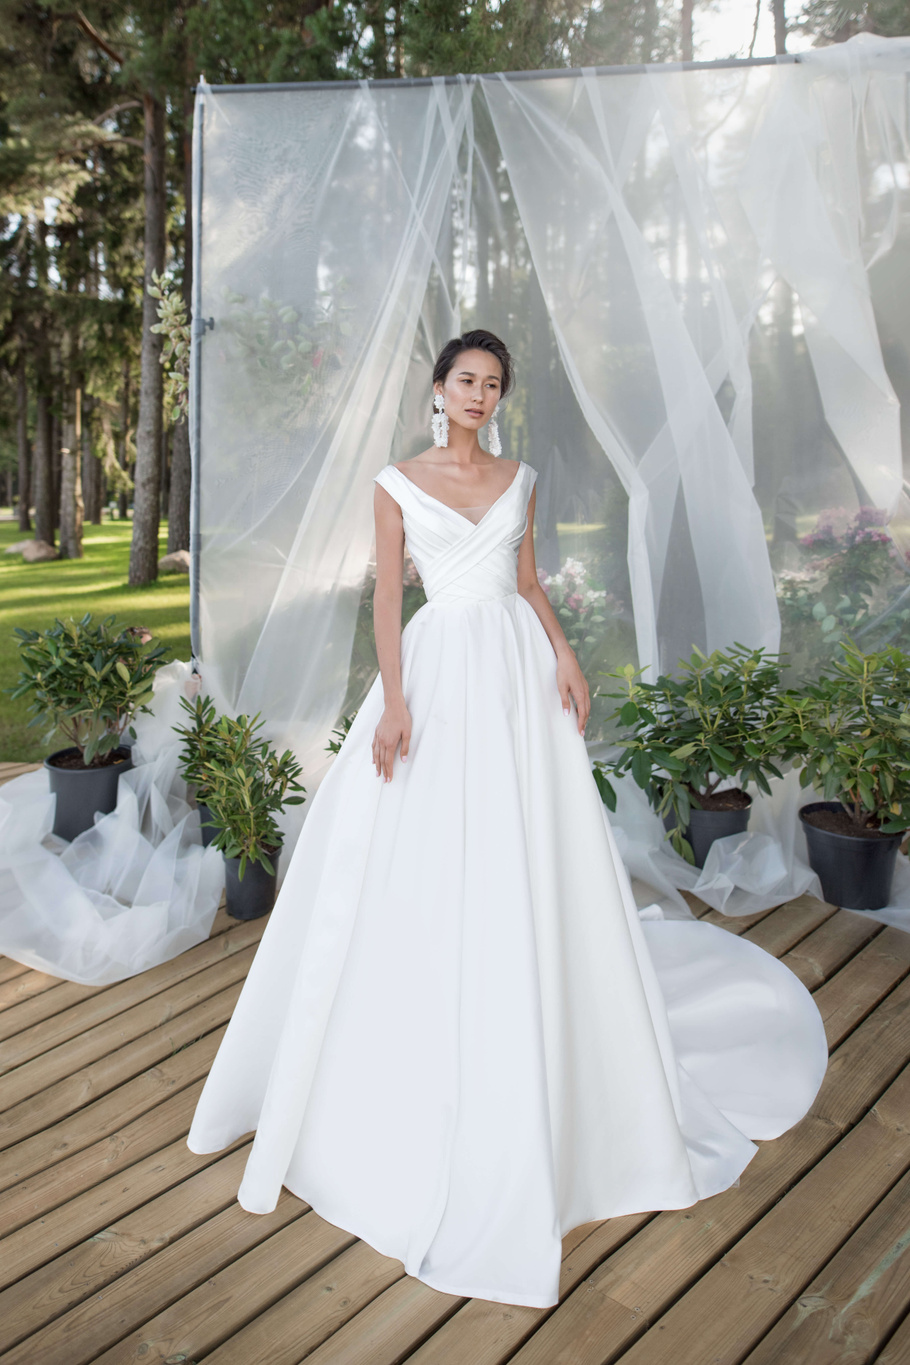 Купить свадебное платье «Рем» Бламмо Биамо из коллекции Нимфа 2020 года в Санкт-Петербурге